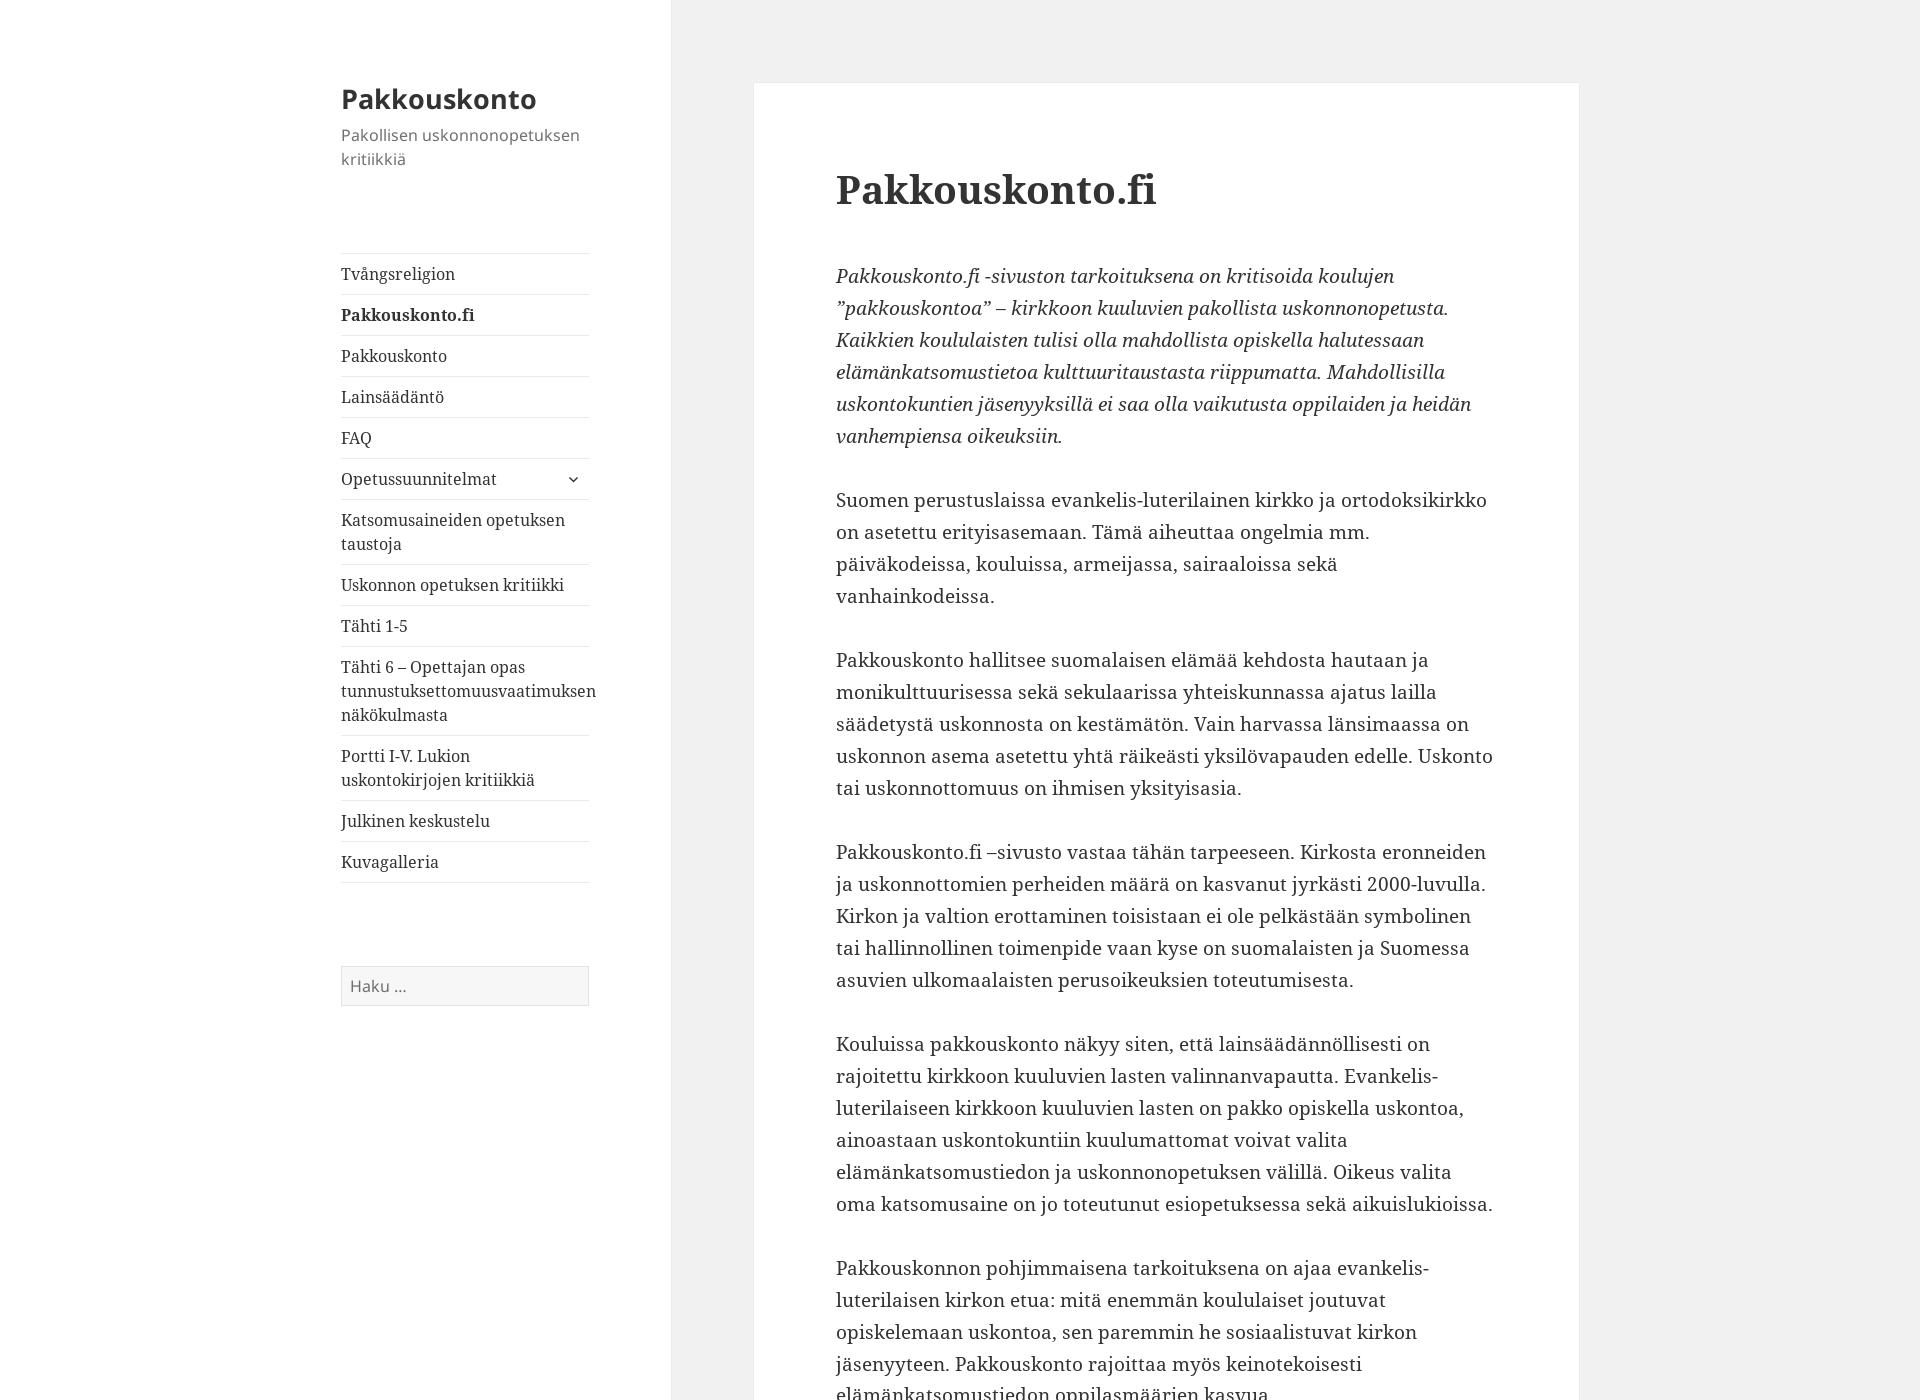 Näyttökuva pakkouskonto.fi